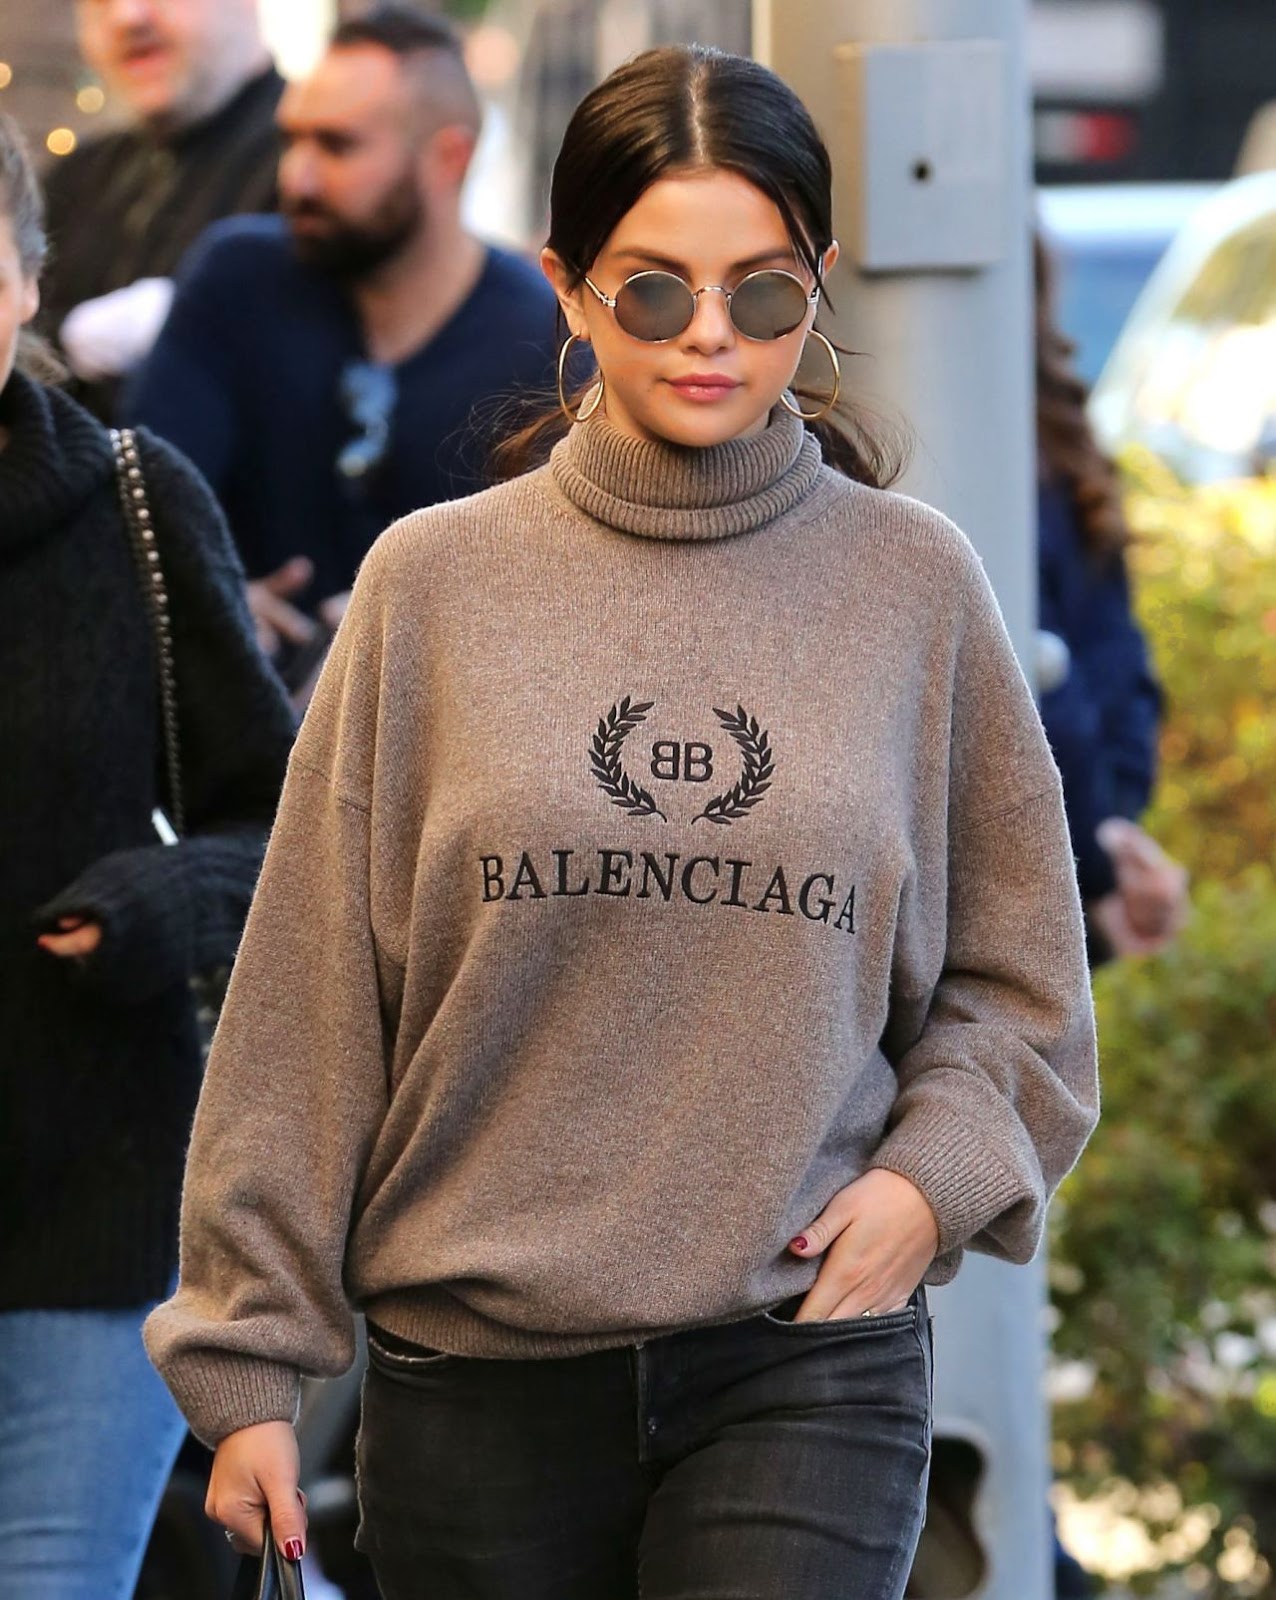 Bạn có thể thoải mái mix áo len trung tính với quần jeans mà không lo bị 'dừ'. Selena Gomez còn khéo tăng vẻ sang chảnh cho set đồ bằng cách kết hợp phụ kiện khuyên tai to bản và kính mắt tròn.